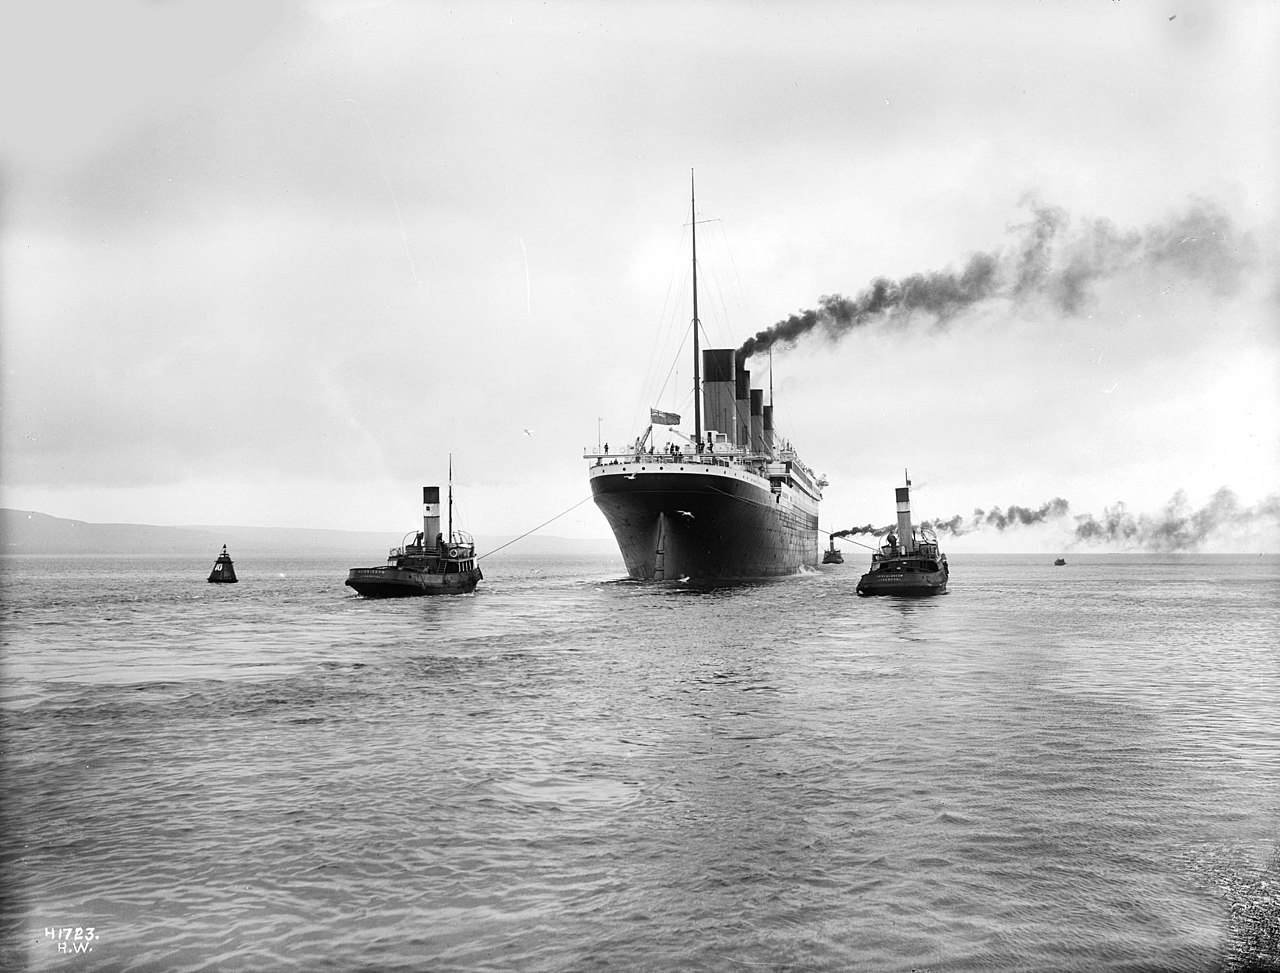 Déi donkel Geheimnisser an e puer wéineg bekannt Fakten hannert der Titanic Katastroph 4